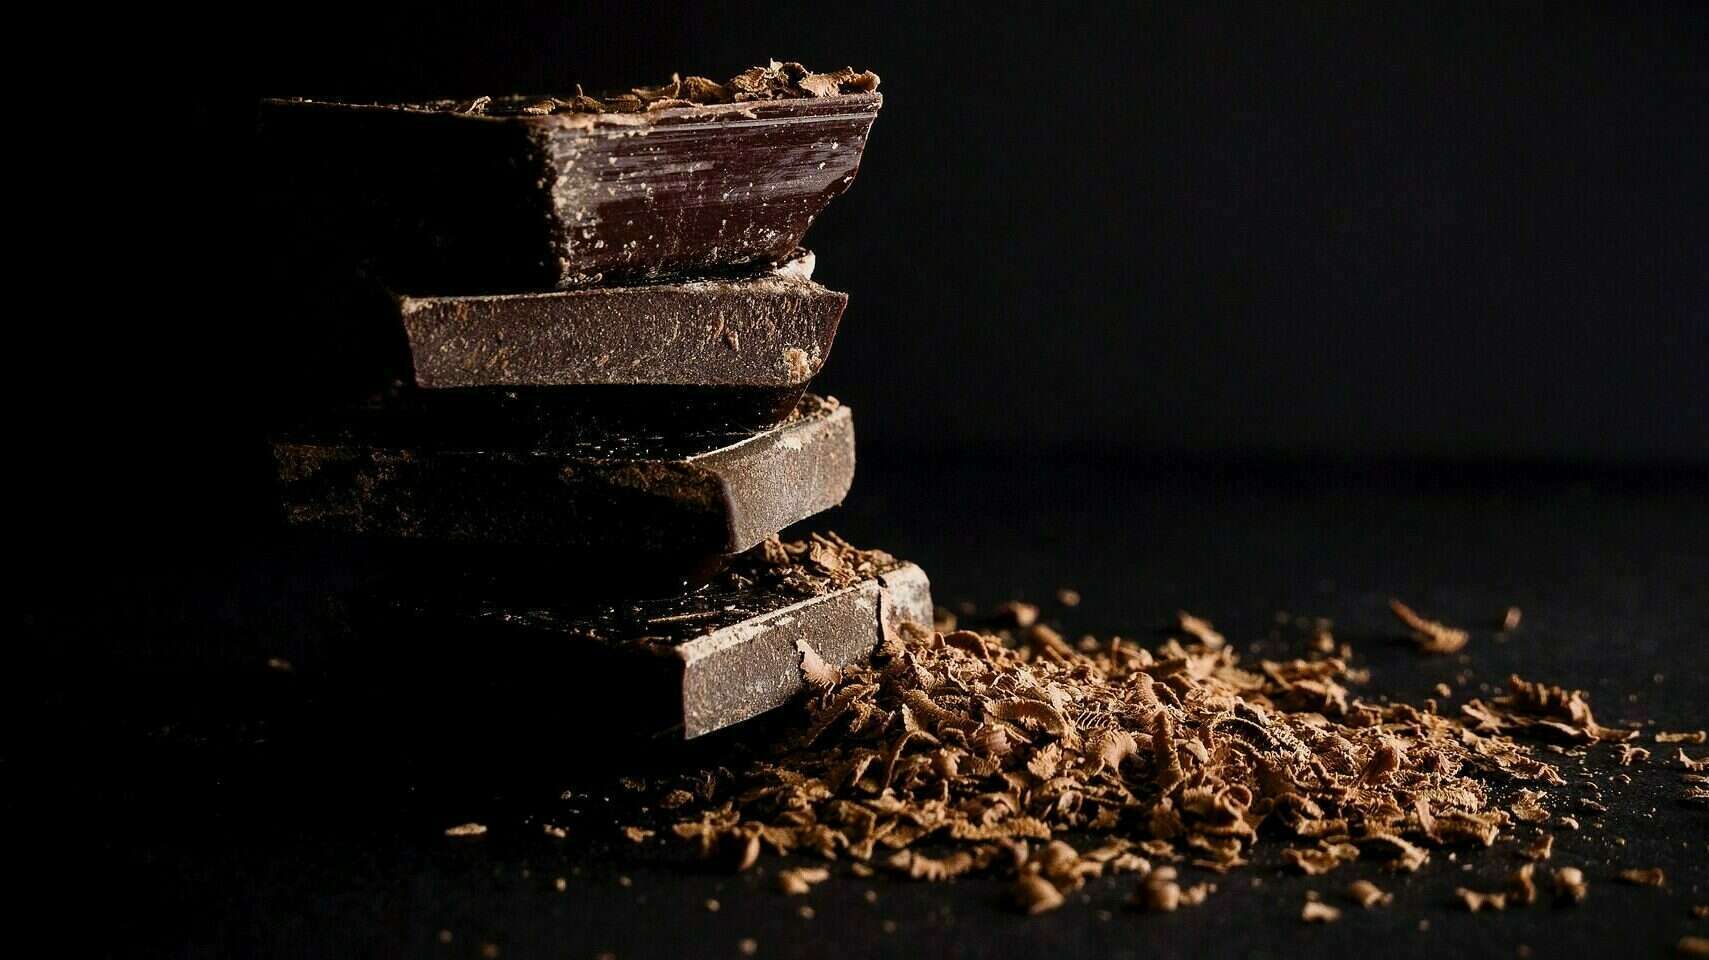 Bienfaits du chocolat : le cacao joue-t-il vraiment sur votre humeur ? -  Blog